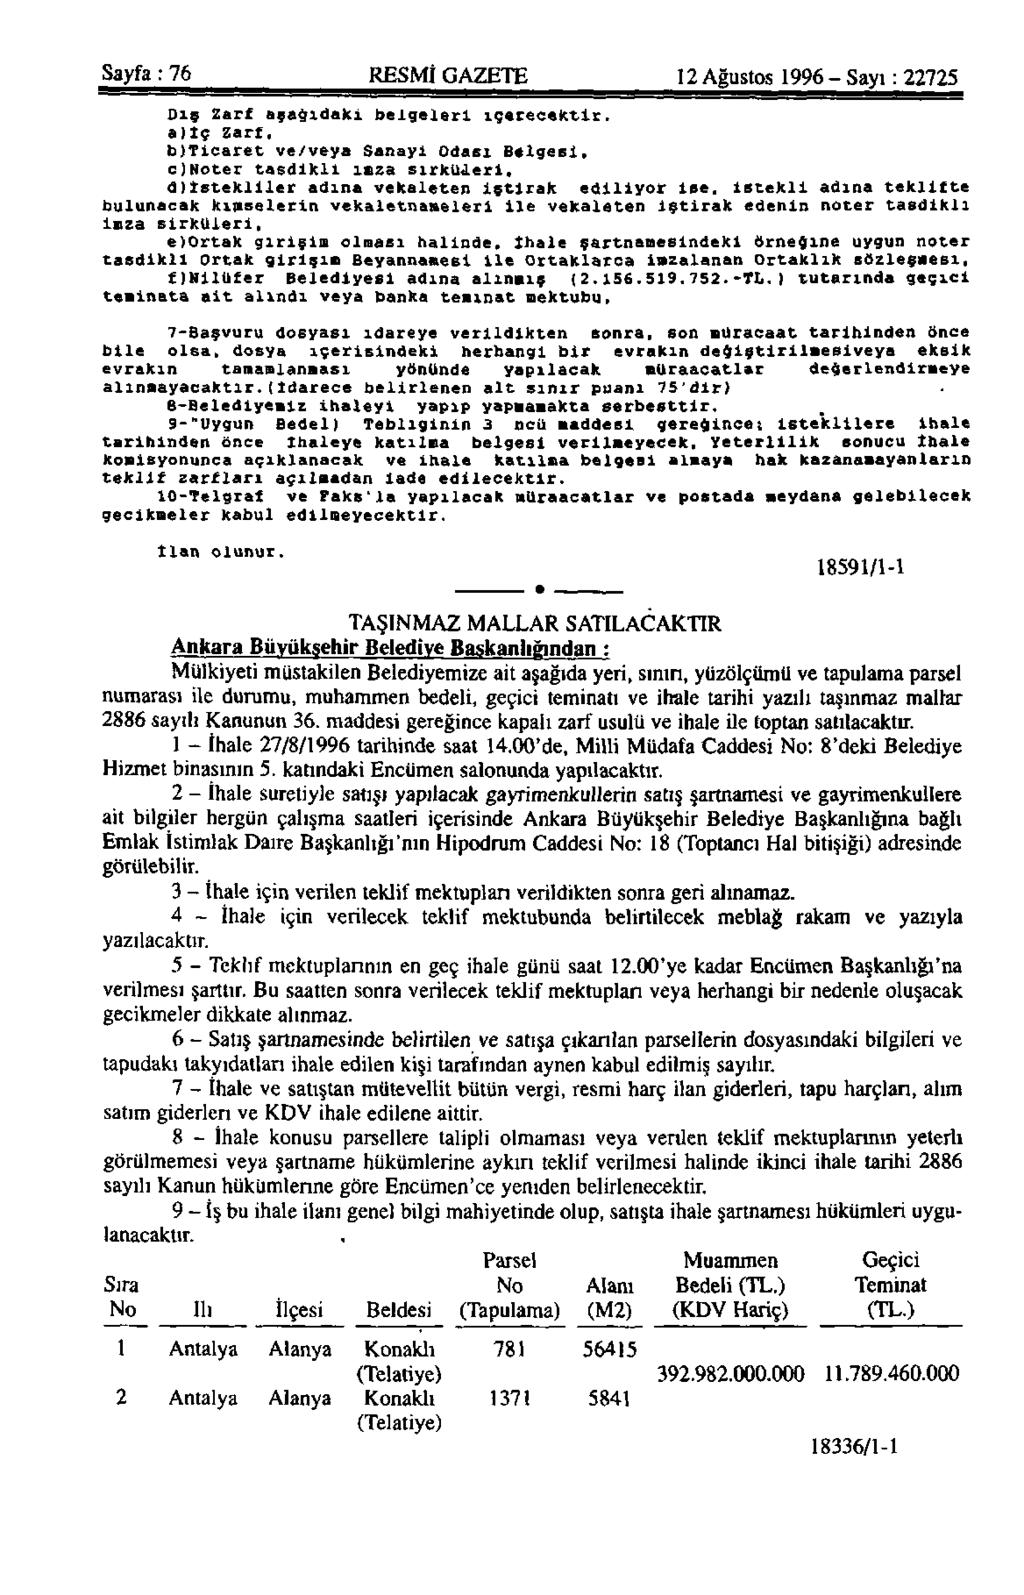 Sayfa: 76 RESMİ GAZETE 12 Ağustos 1996 - Sayı: 22725 Dış Zarf aşağıdaki belgeleri içerecektir, a)iç Zarf, bjticaret ve/veya Sanayi Odası Belgesi, c)noter tasdikli imza sırkuderi.